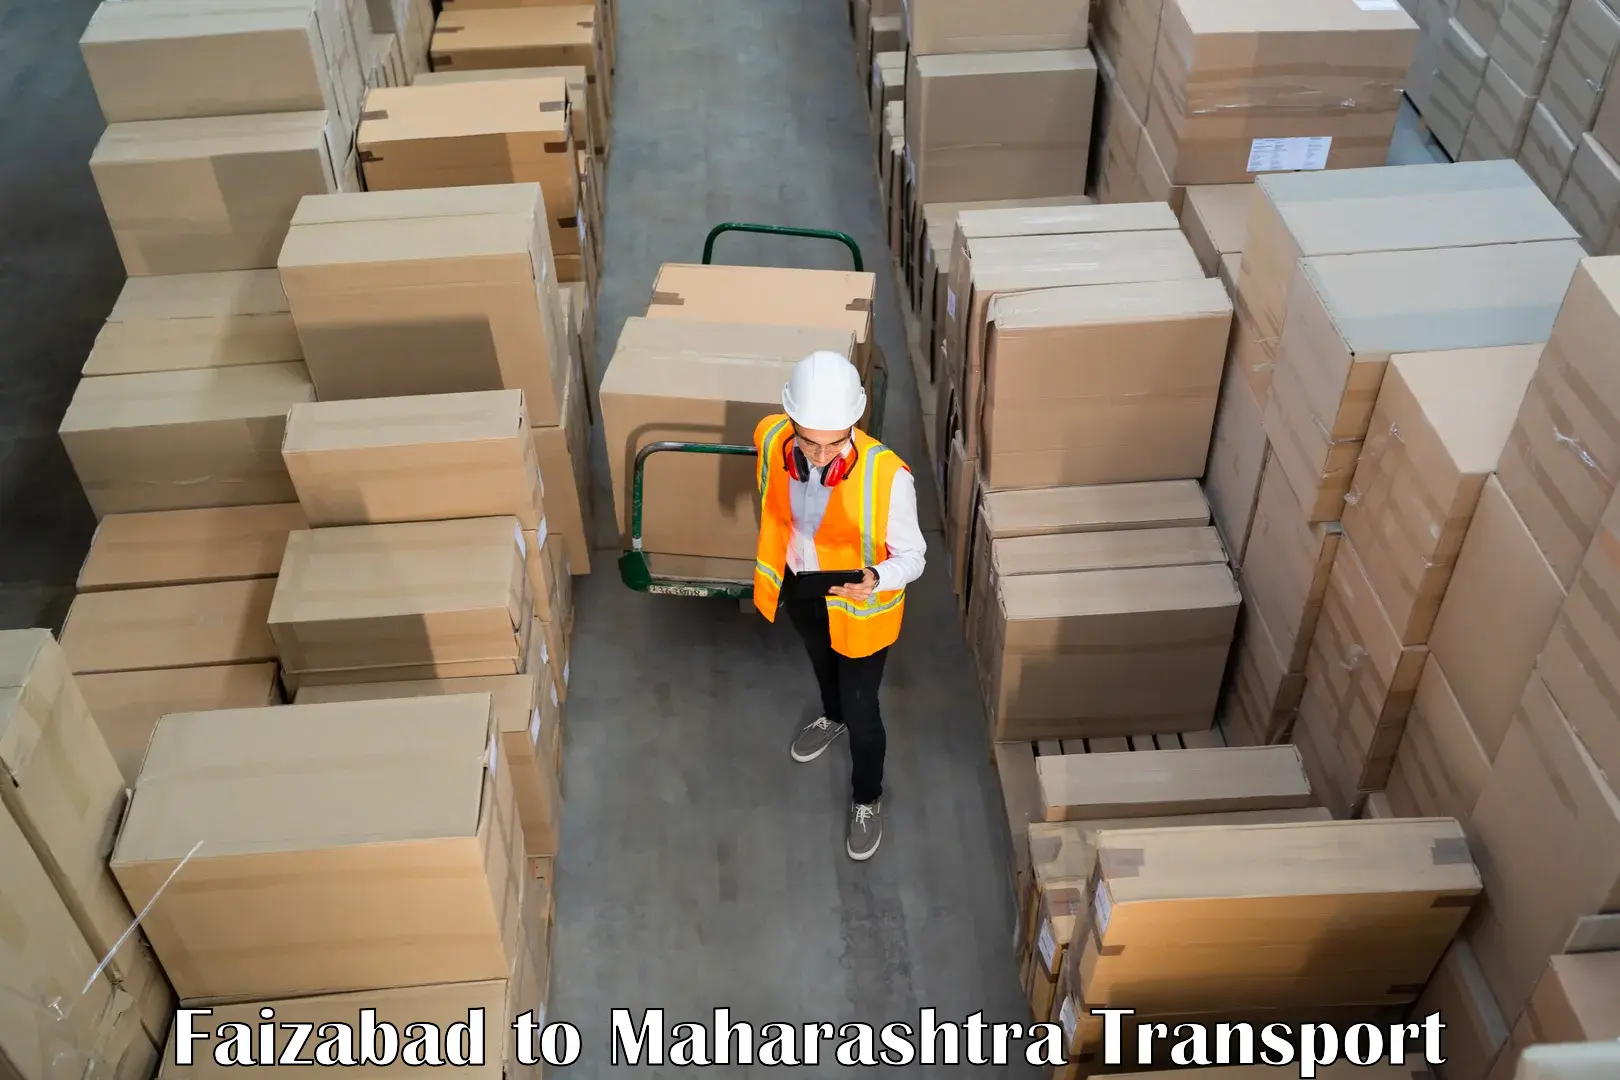 Pick up transport service in Faizabad to Raigarh Maharashtra